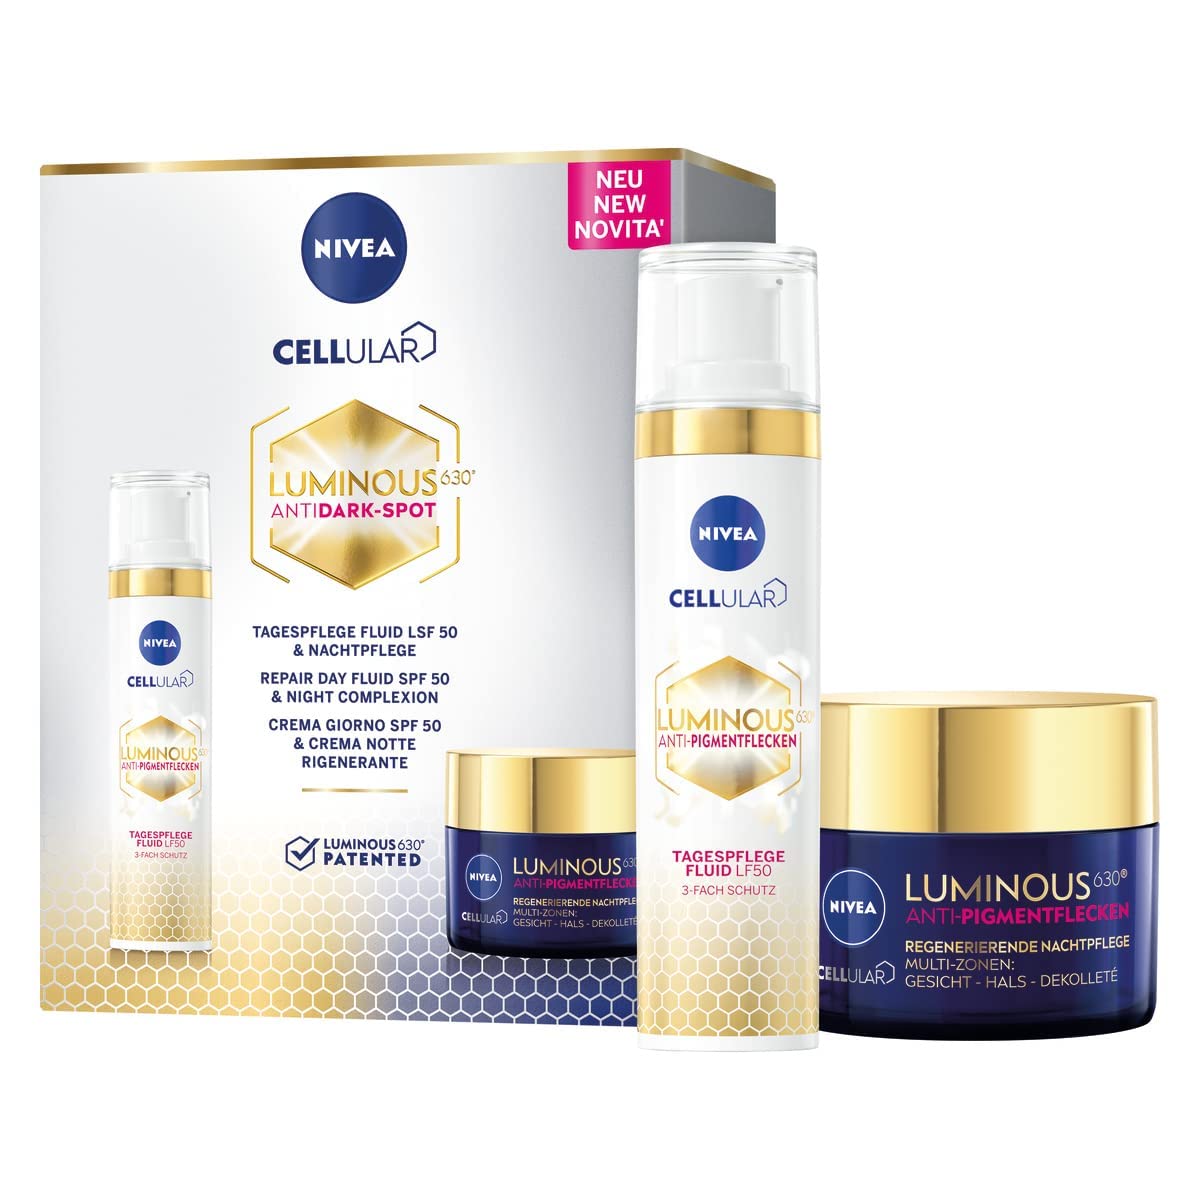 NIVEA Cellular LUMINOUS 630® Anti-Pigmentflecken Tag & Nacht Set, Gesichtspflege, inkl. Anti-Aging Tagespflege und Nachtpflege für reife Haut